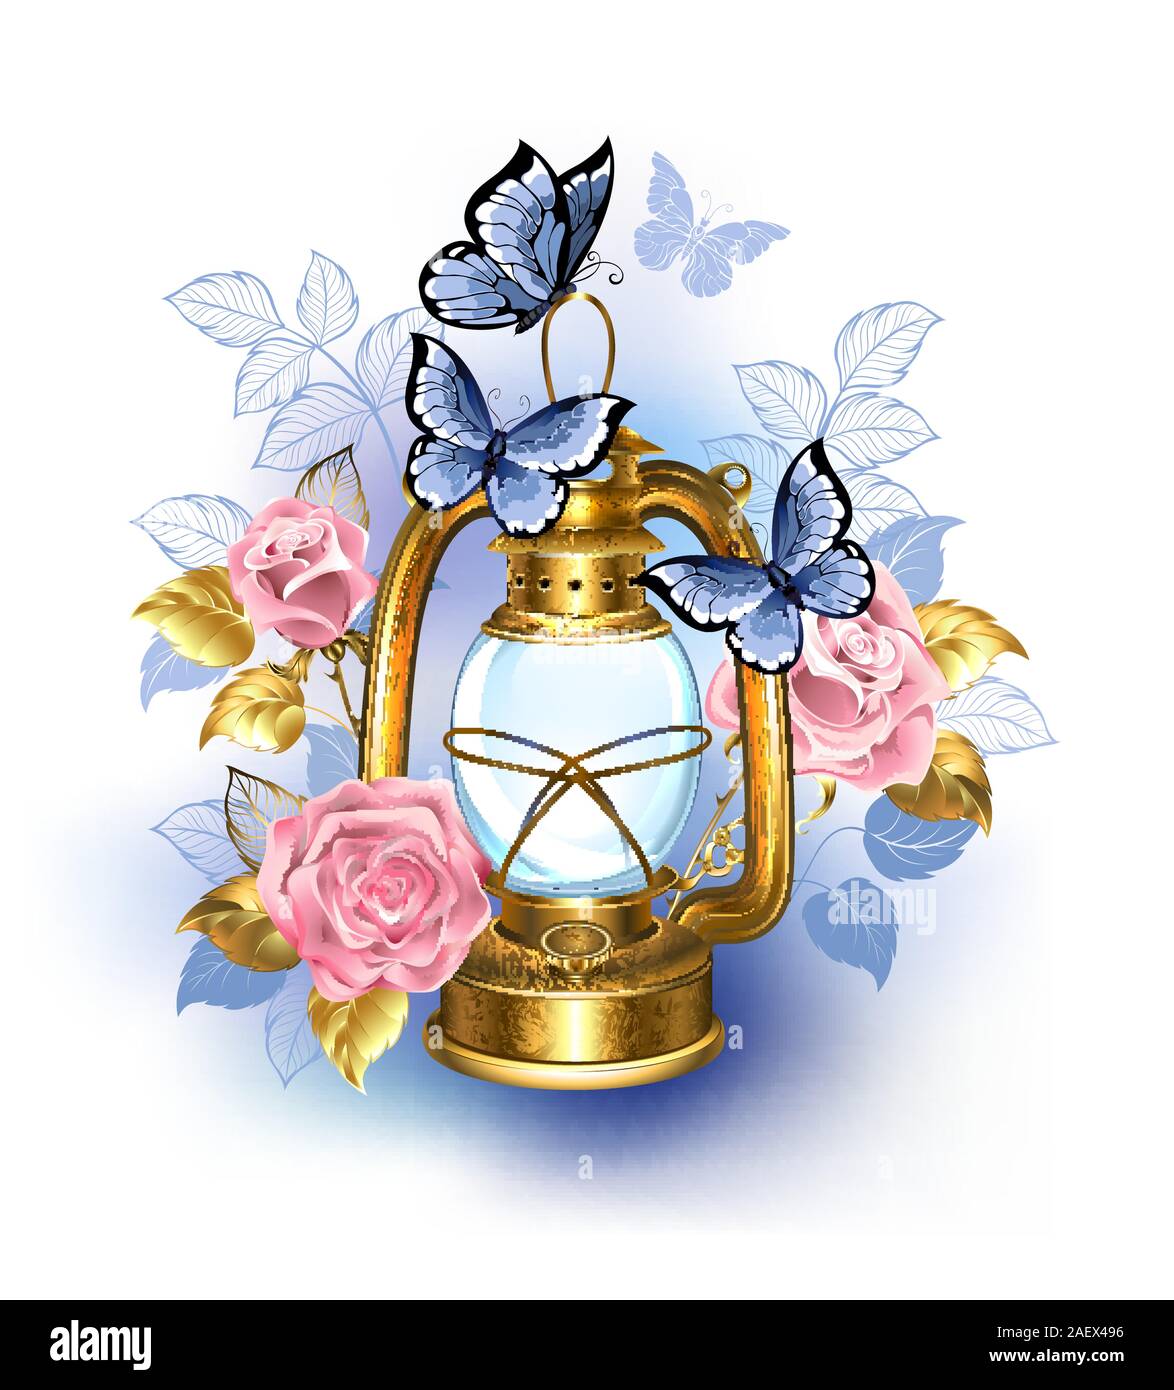 Le kérosène, de meubles anciens, de lampes en laiton décoré de roses, rosiers en fleurs et papillons bleus sur fond blanc. Illustration de Vecteur